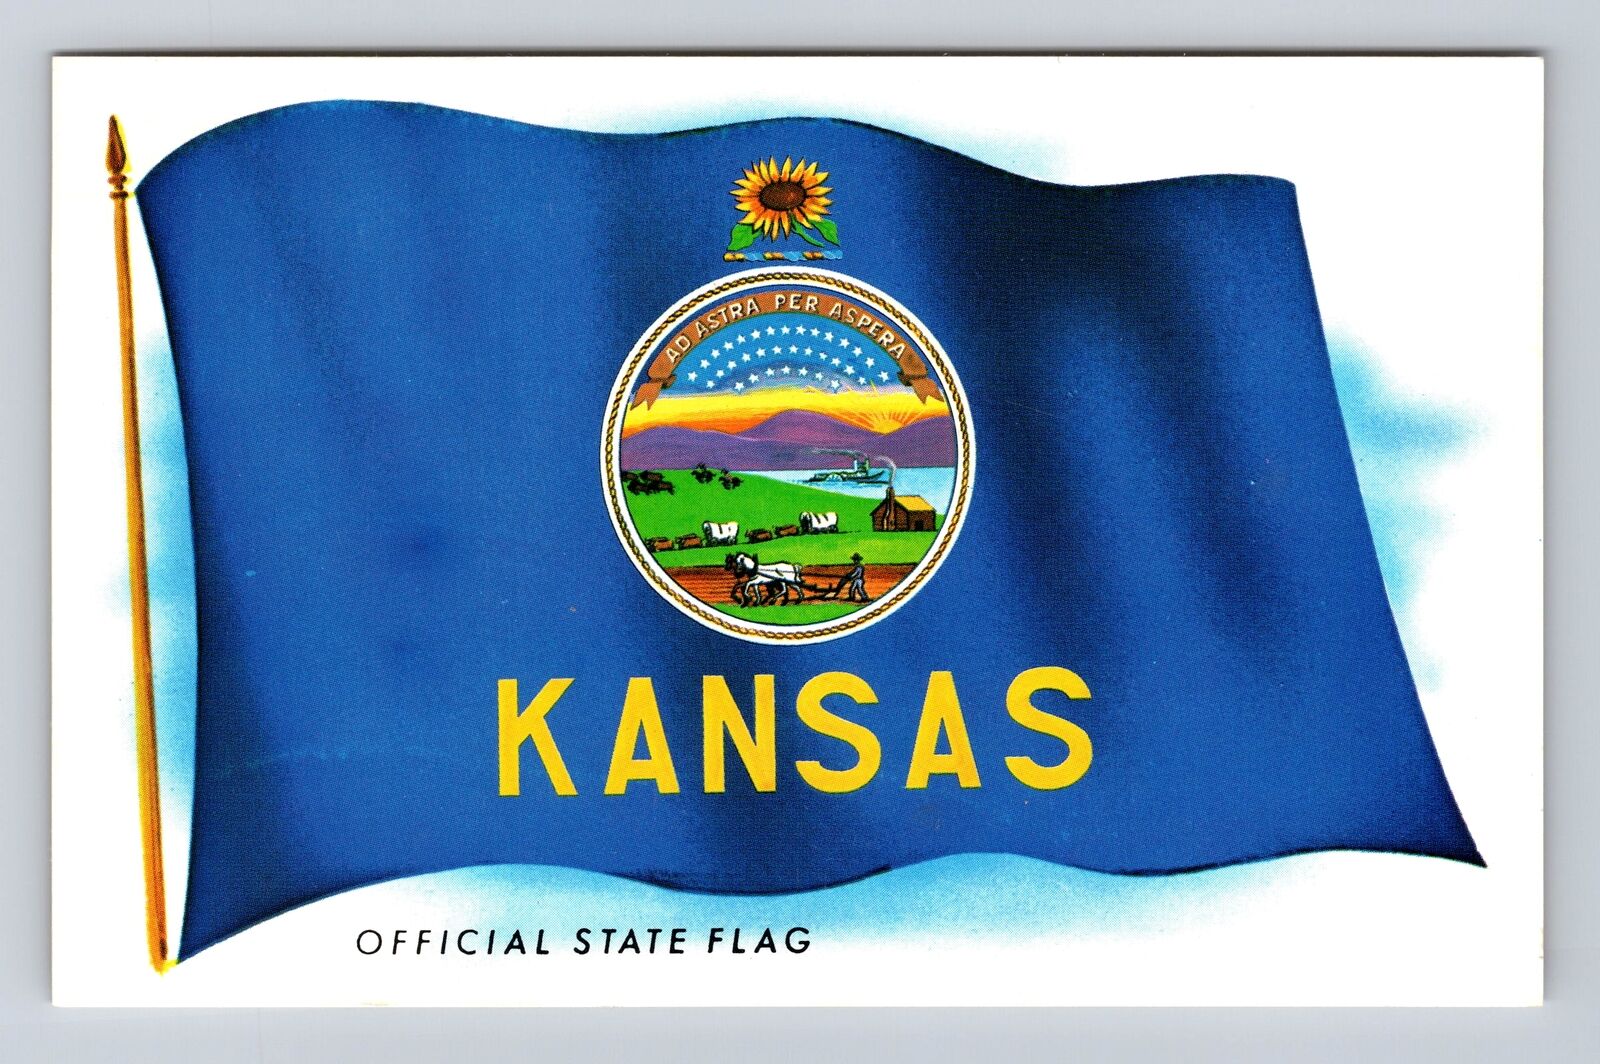 KS-Kansas, Official State Flag, General Greeting, Antique Vintage Postcard